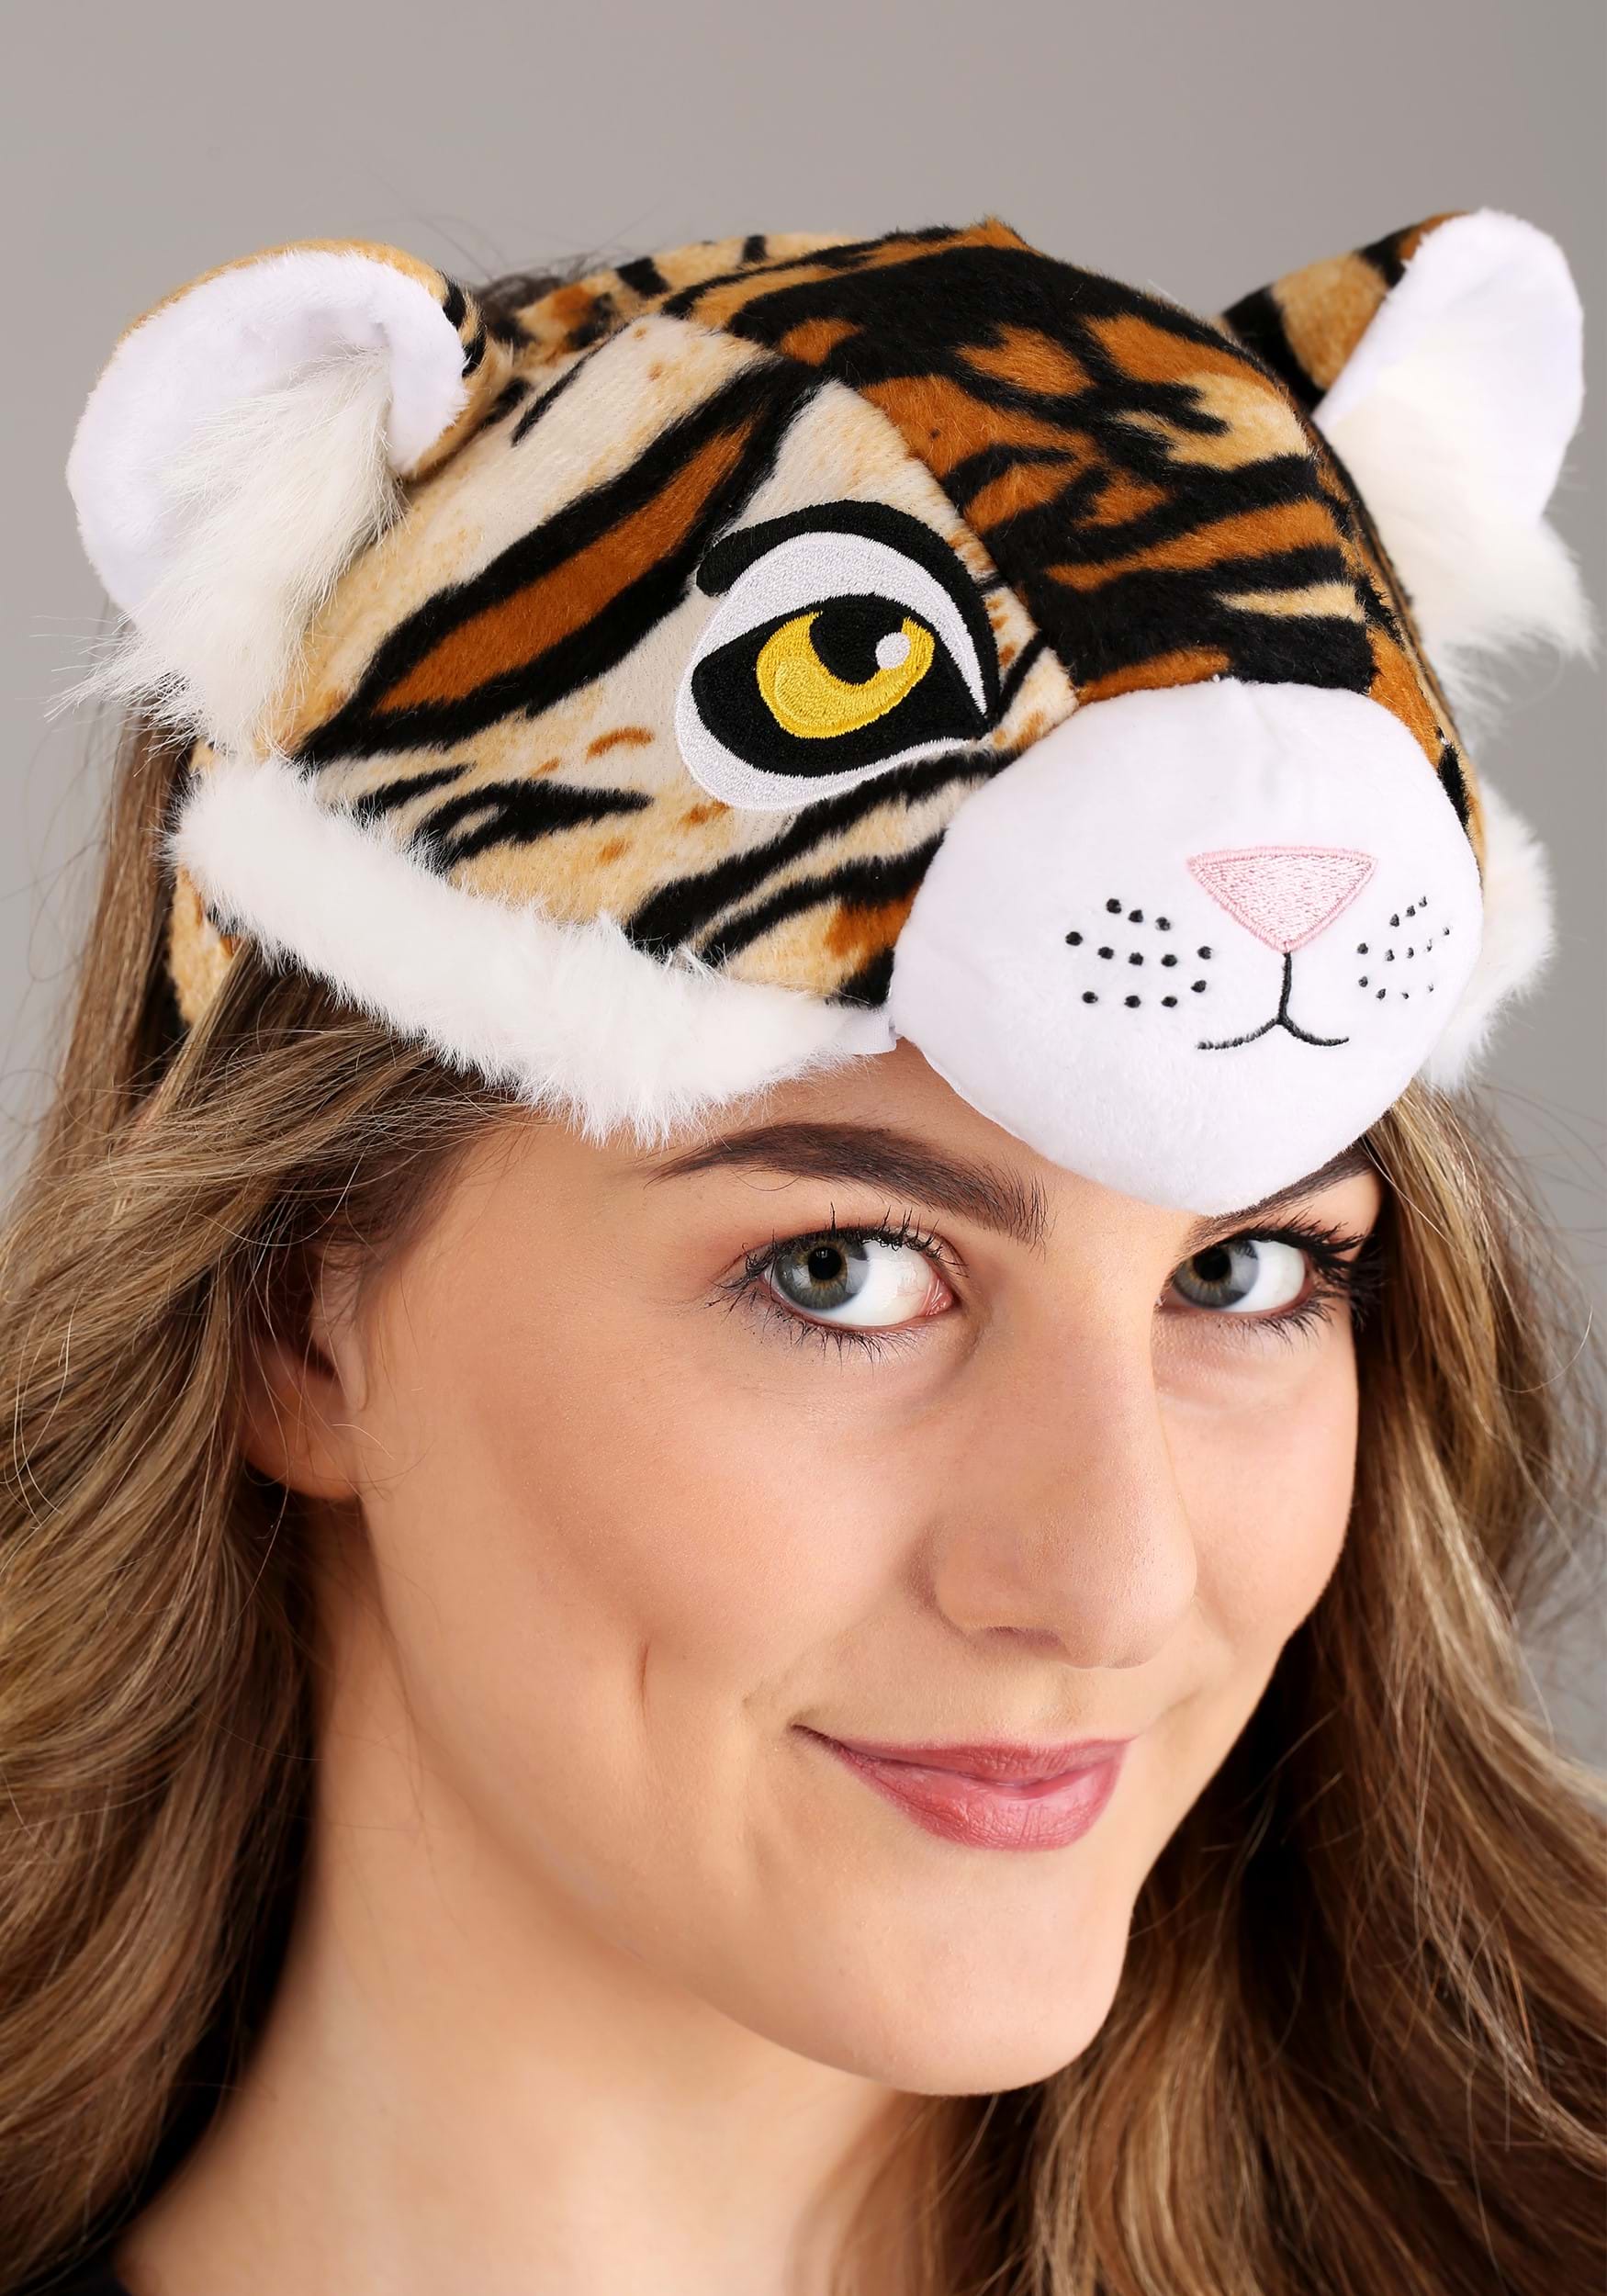 Tiger Headband & Tail Costume Kit